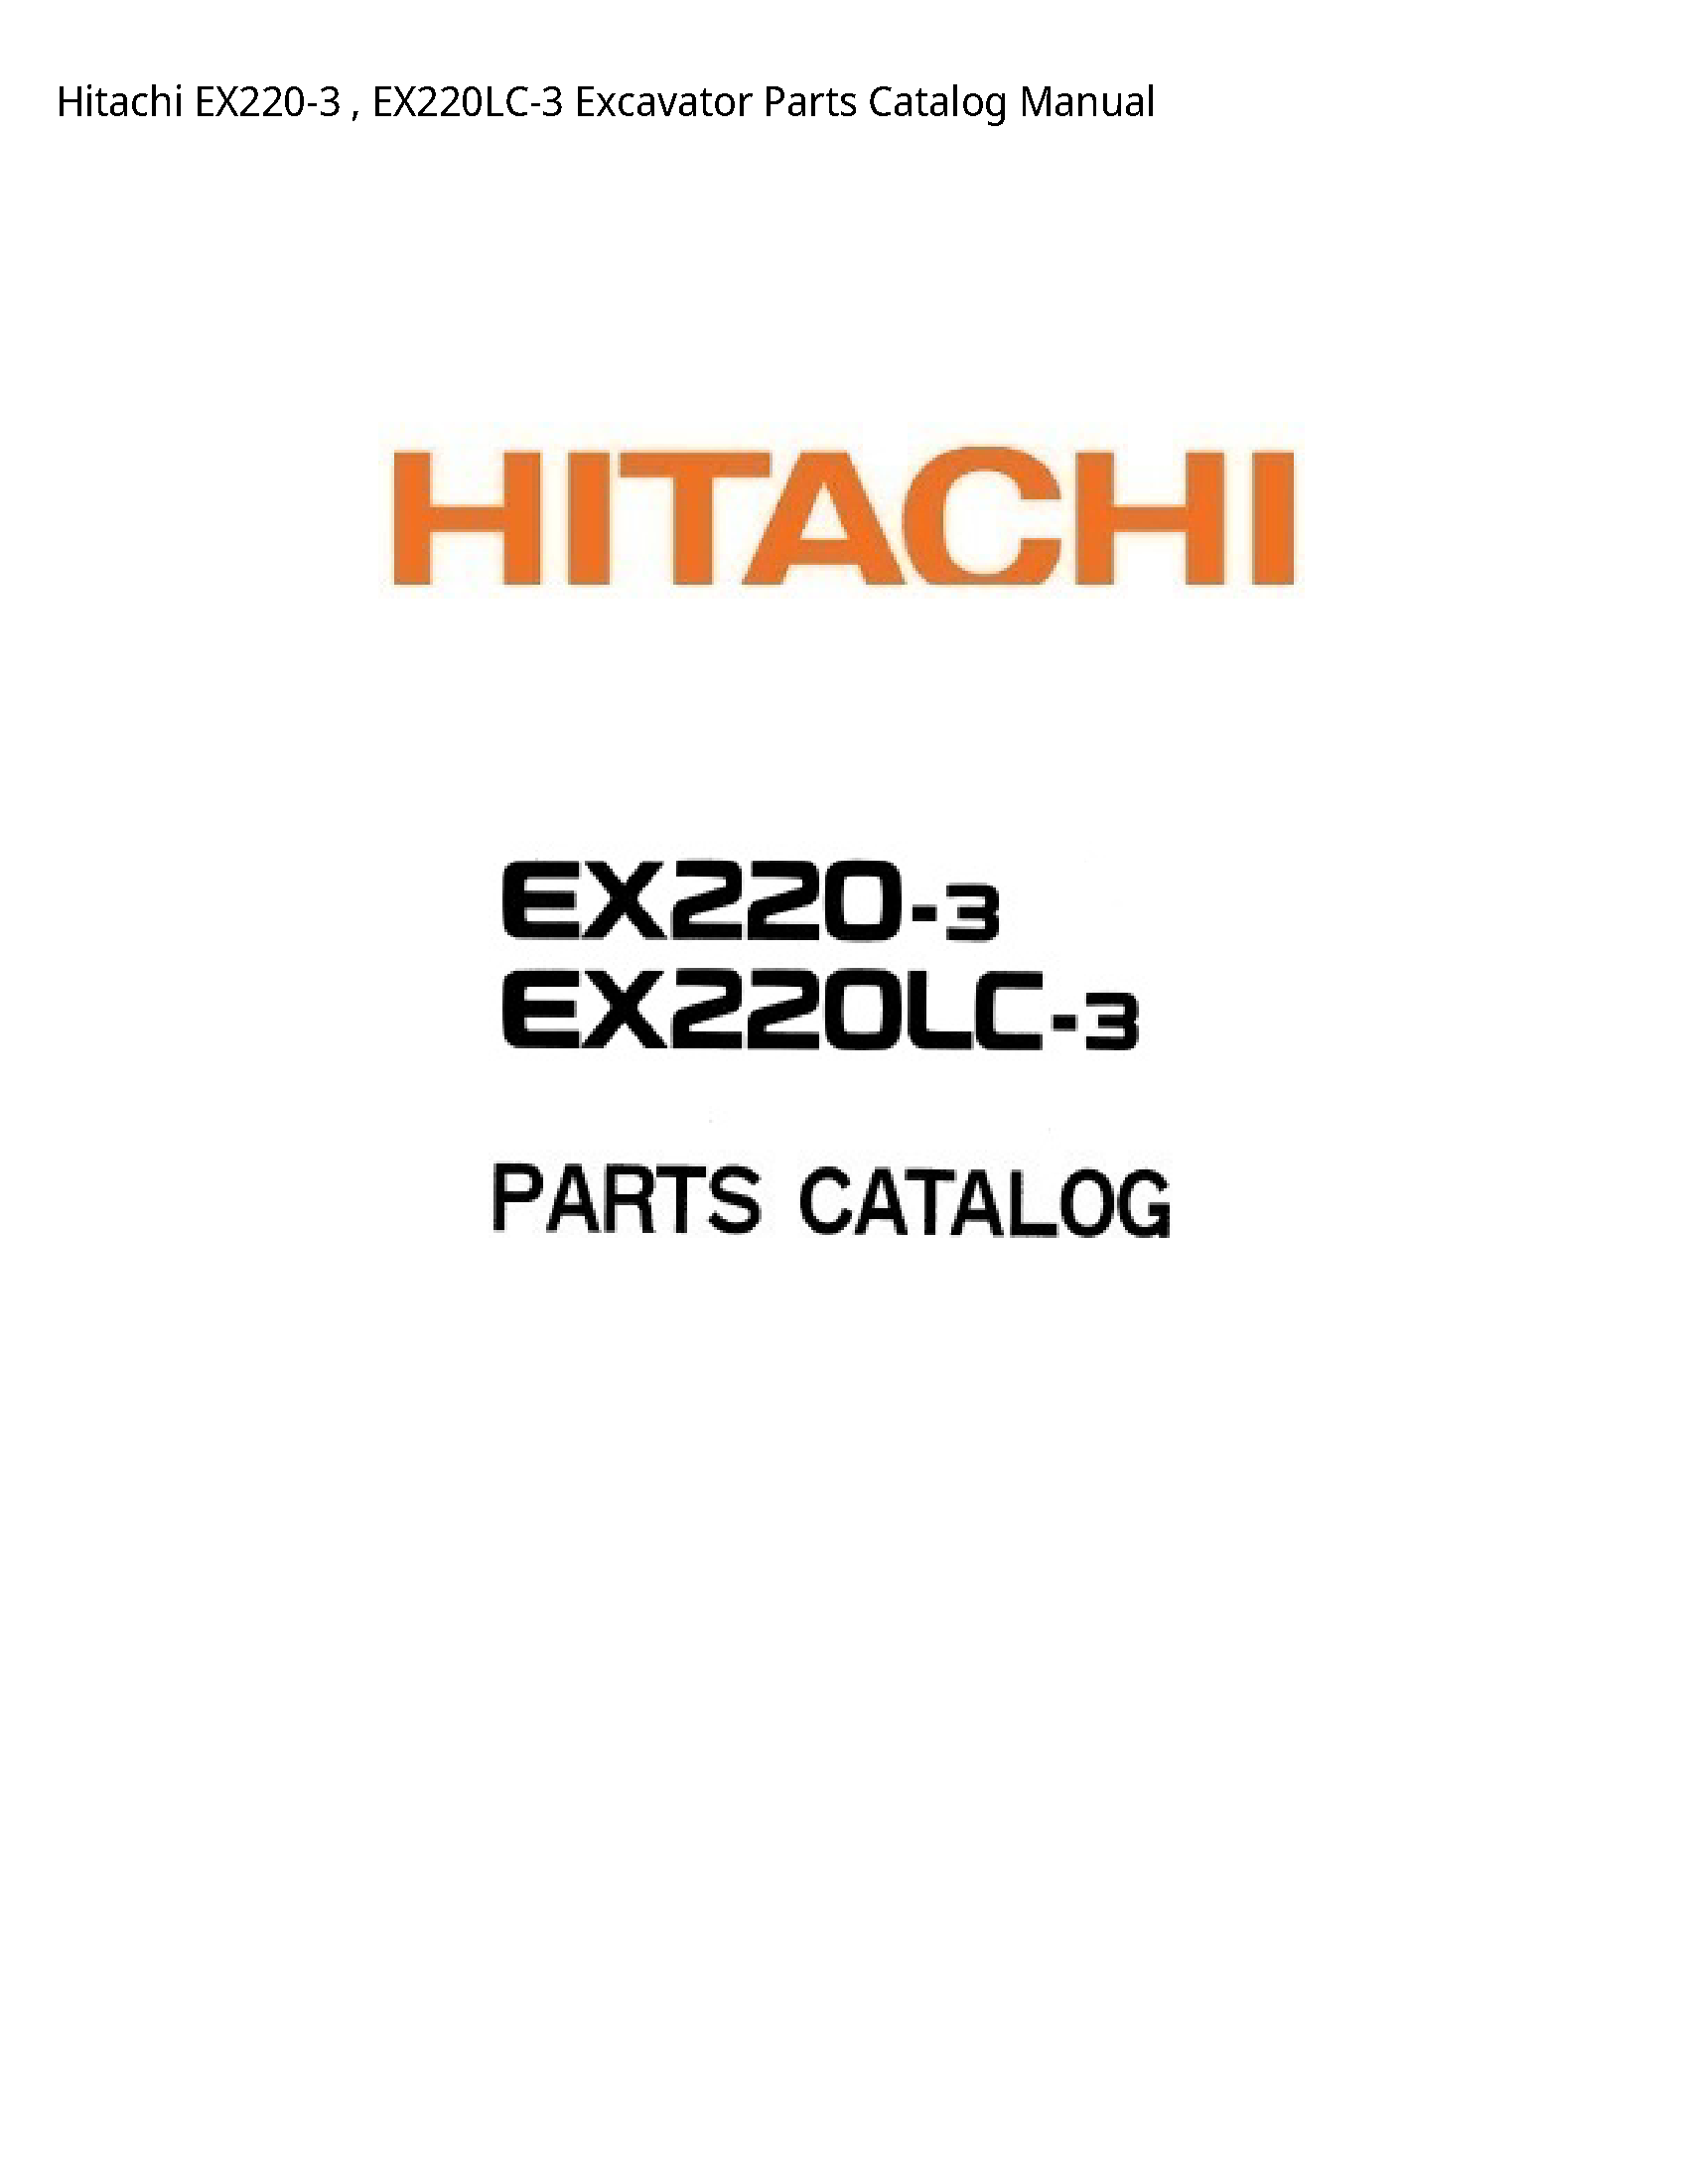 Hitachi EX220-3 Excavator Parts Catalog manual